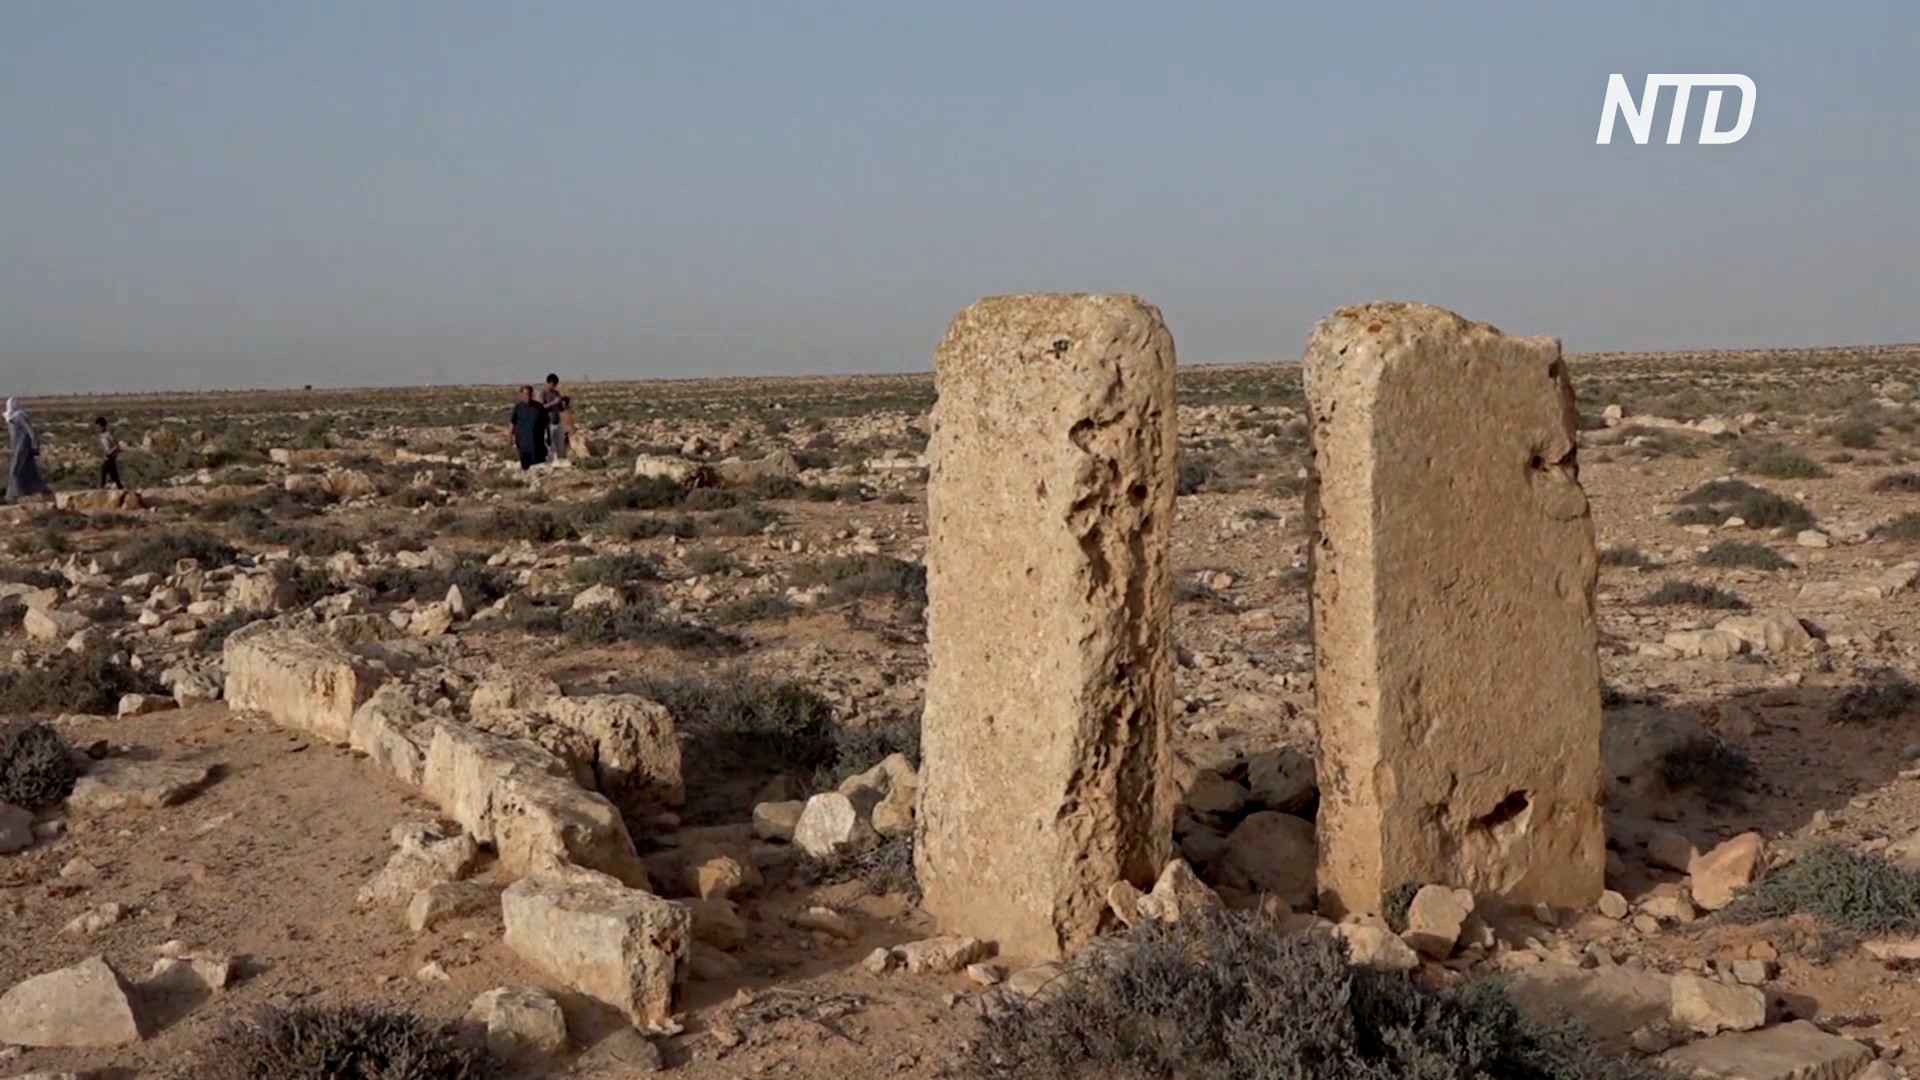 Древние руины в Ливии разрушаются под действием ветра, солнца и воды